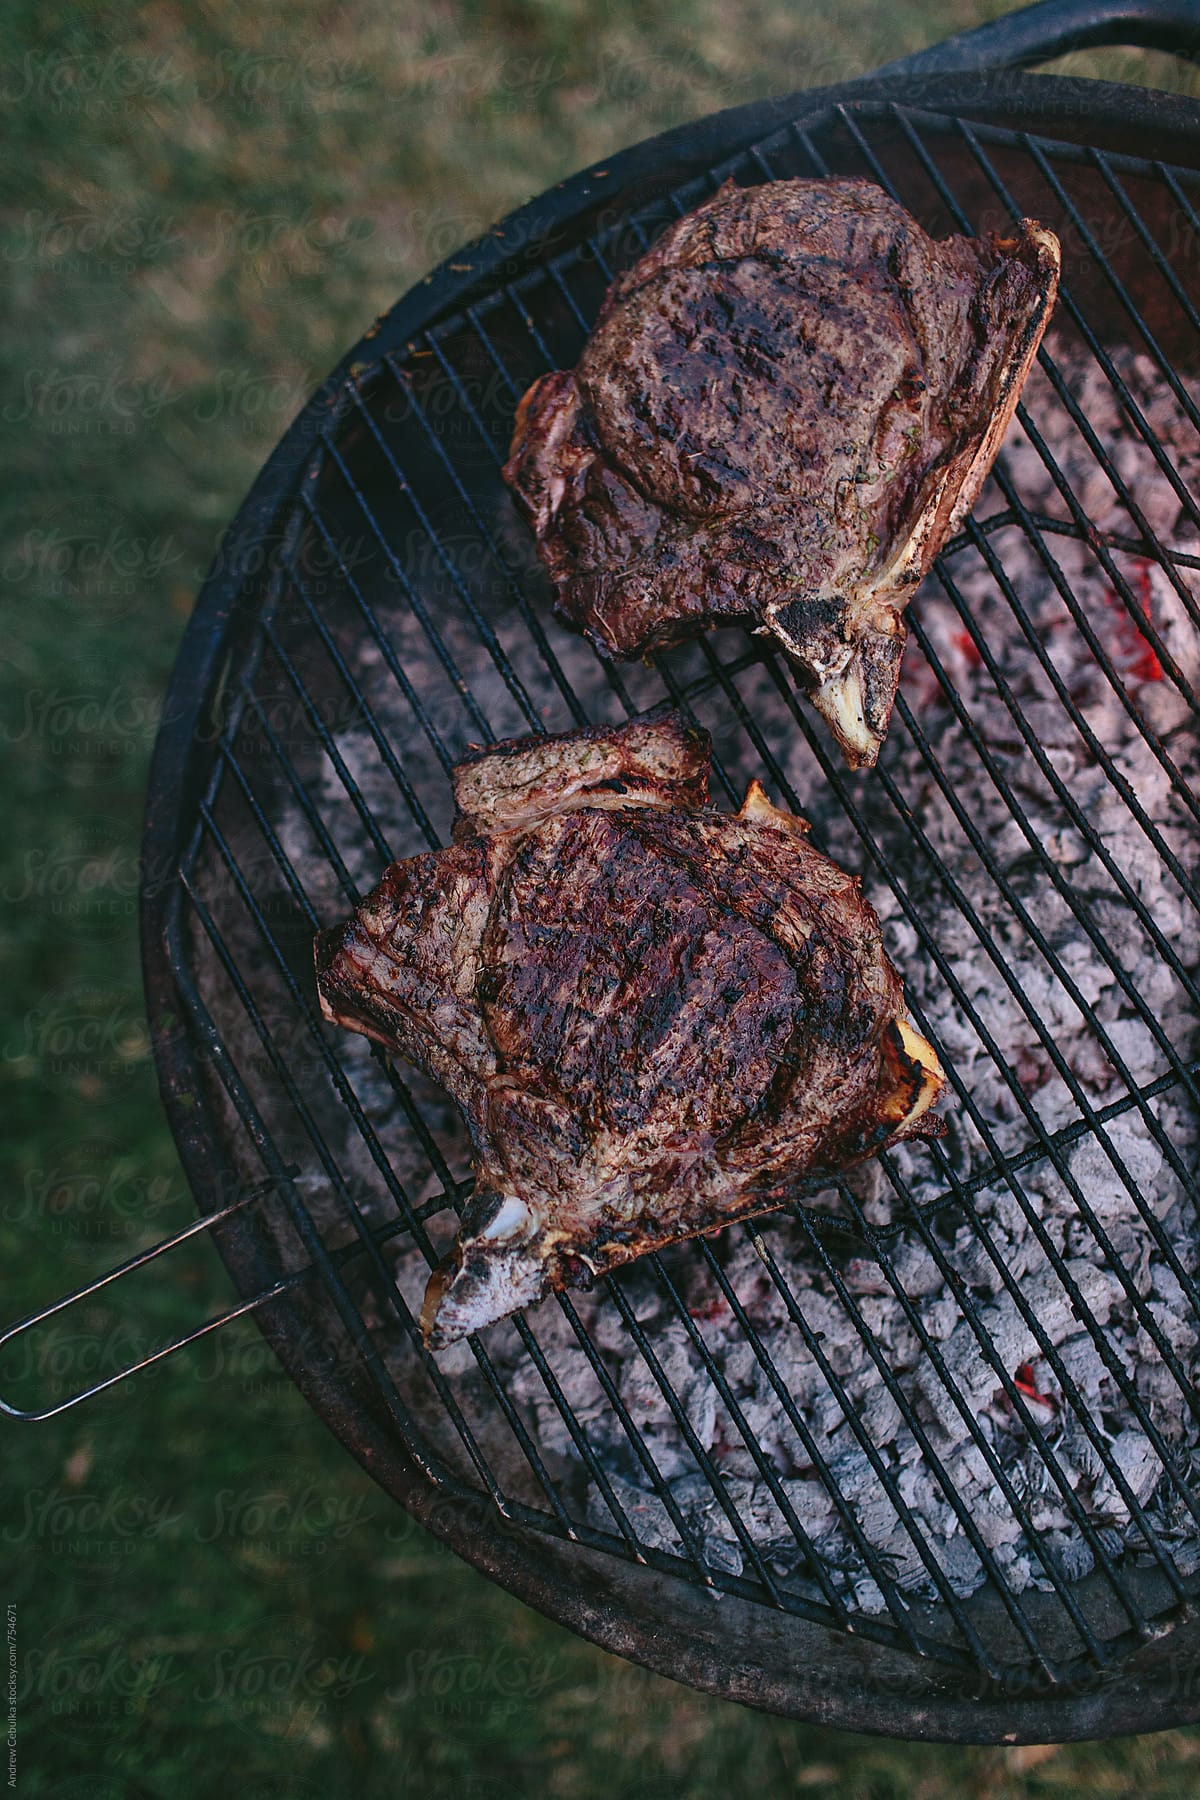 Steak being grilled- Digital File